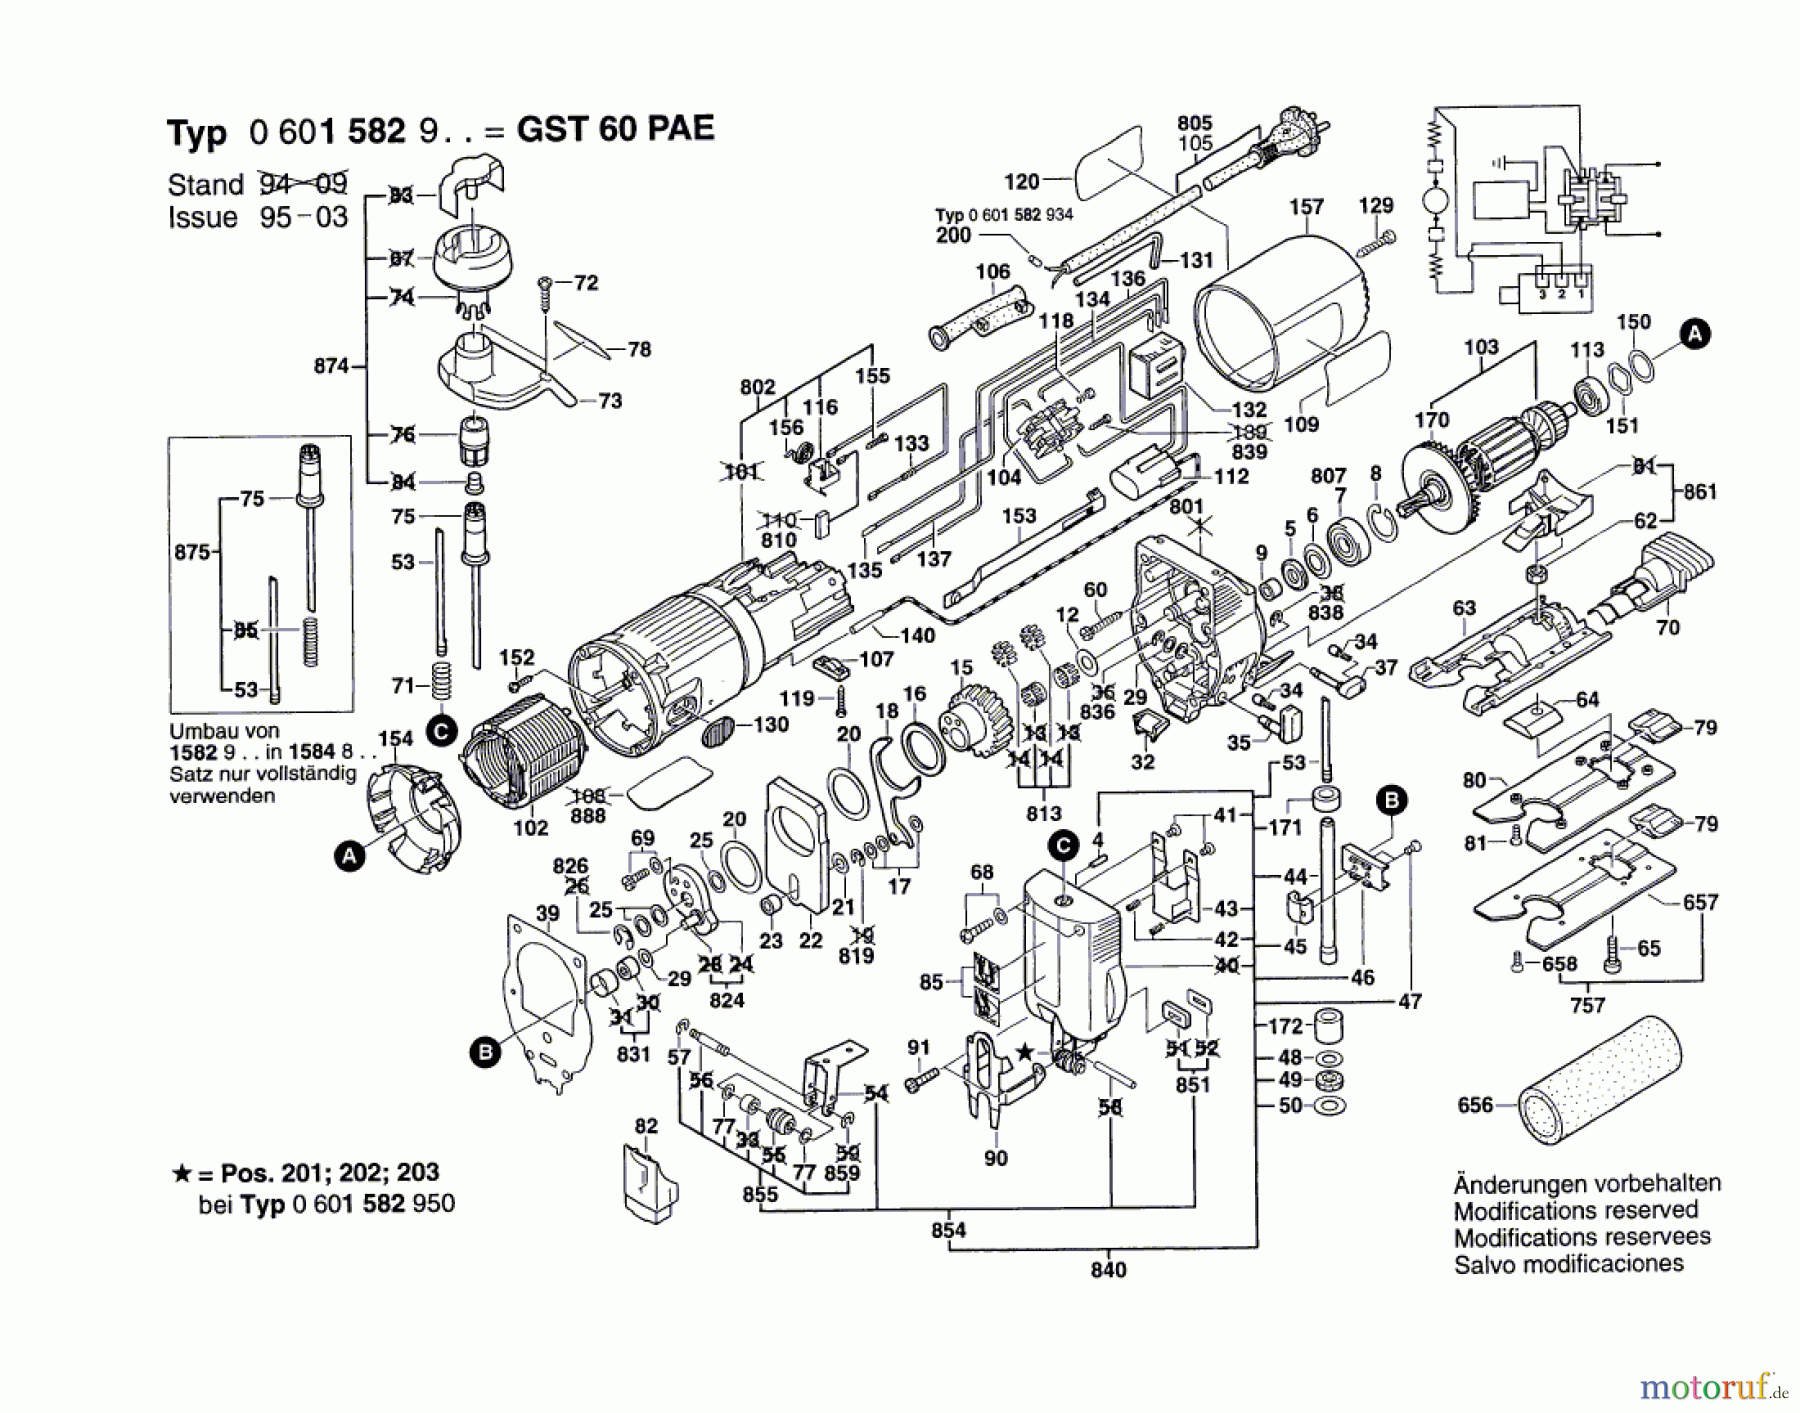  Bosch Werkzeug Stichsäge GST 60 PAE Seite 1